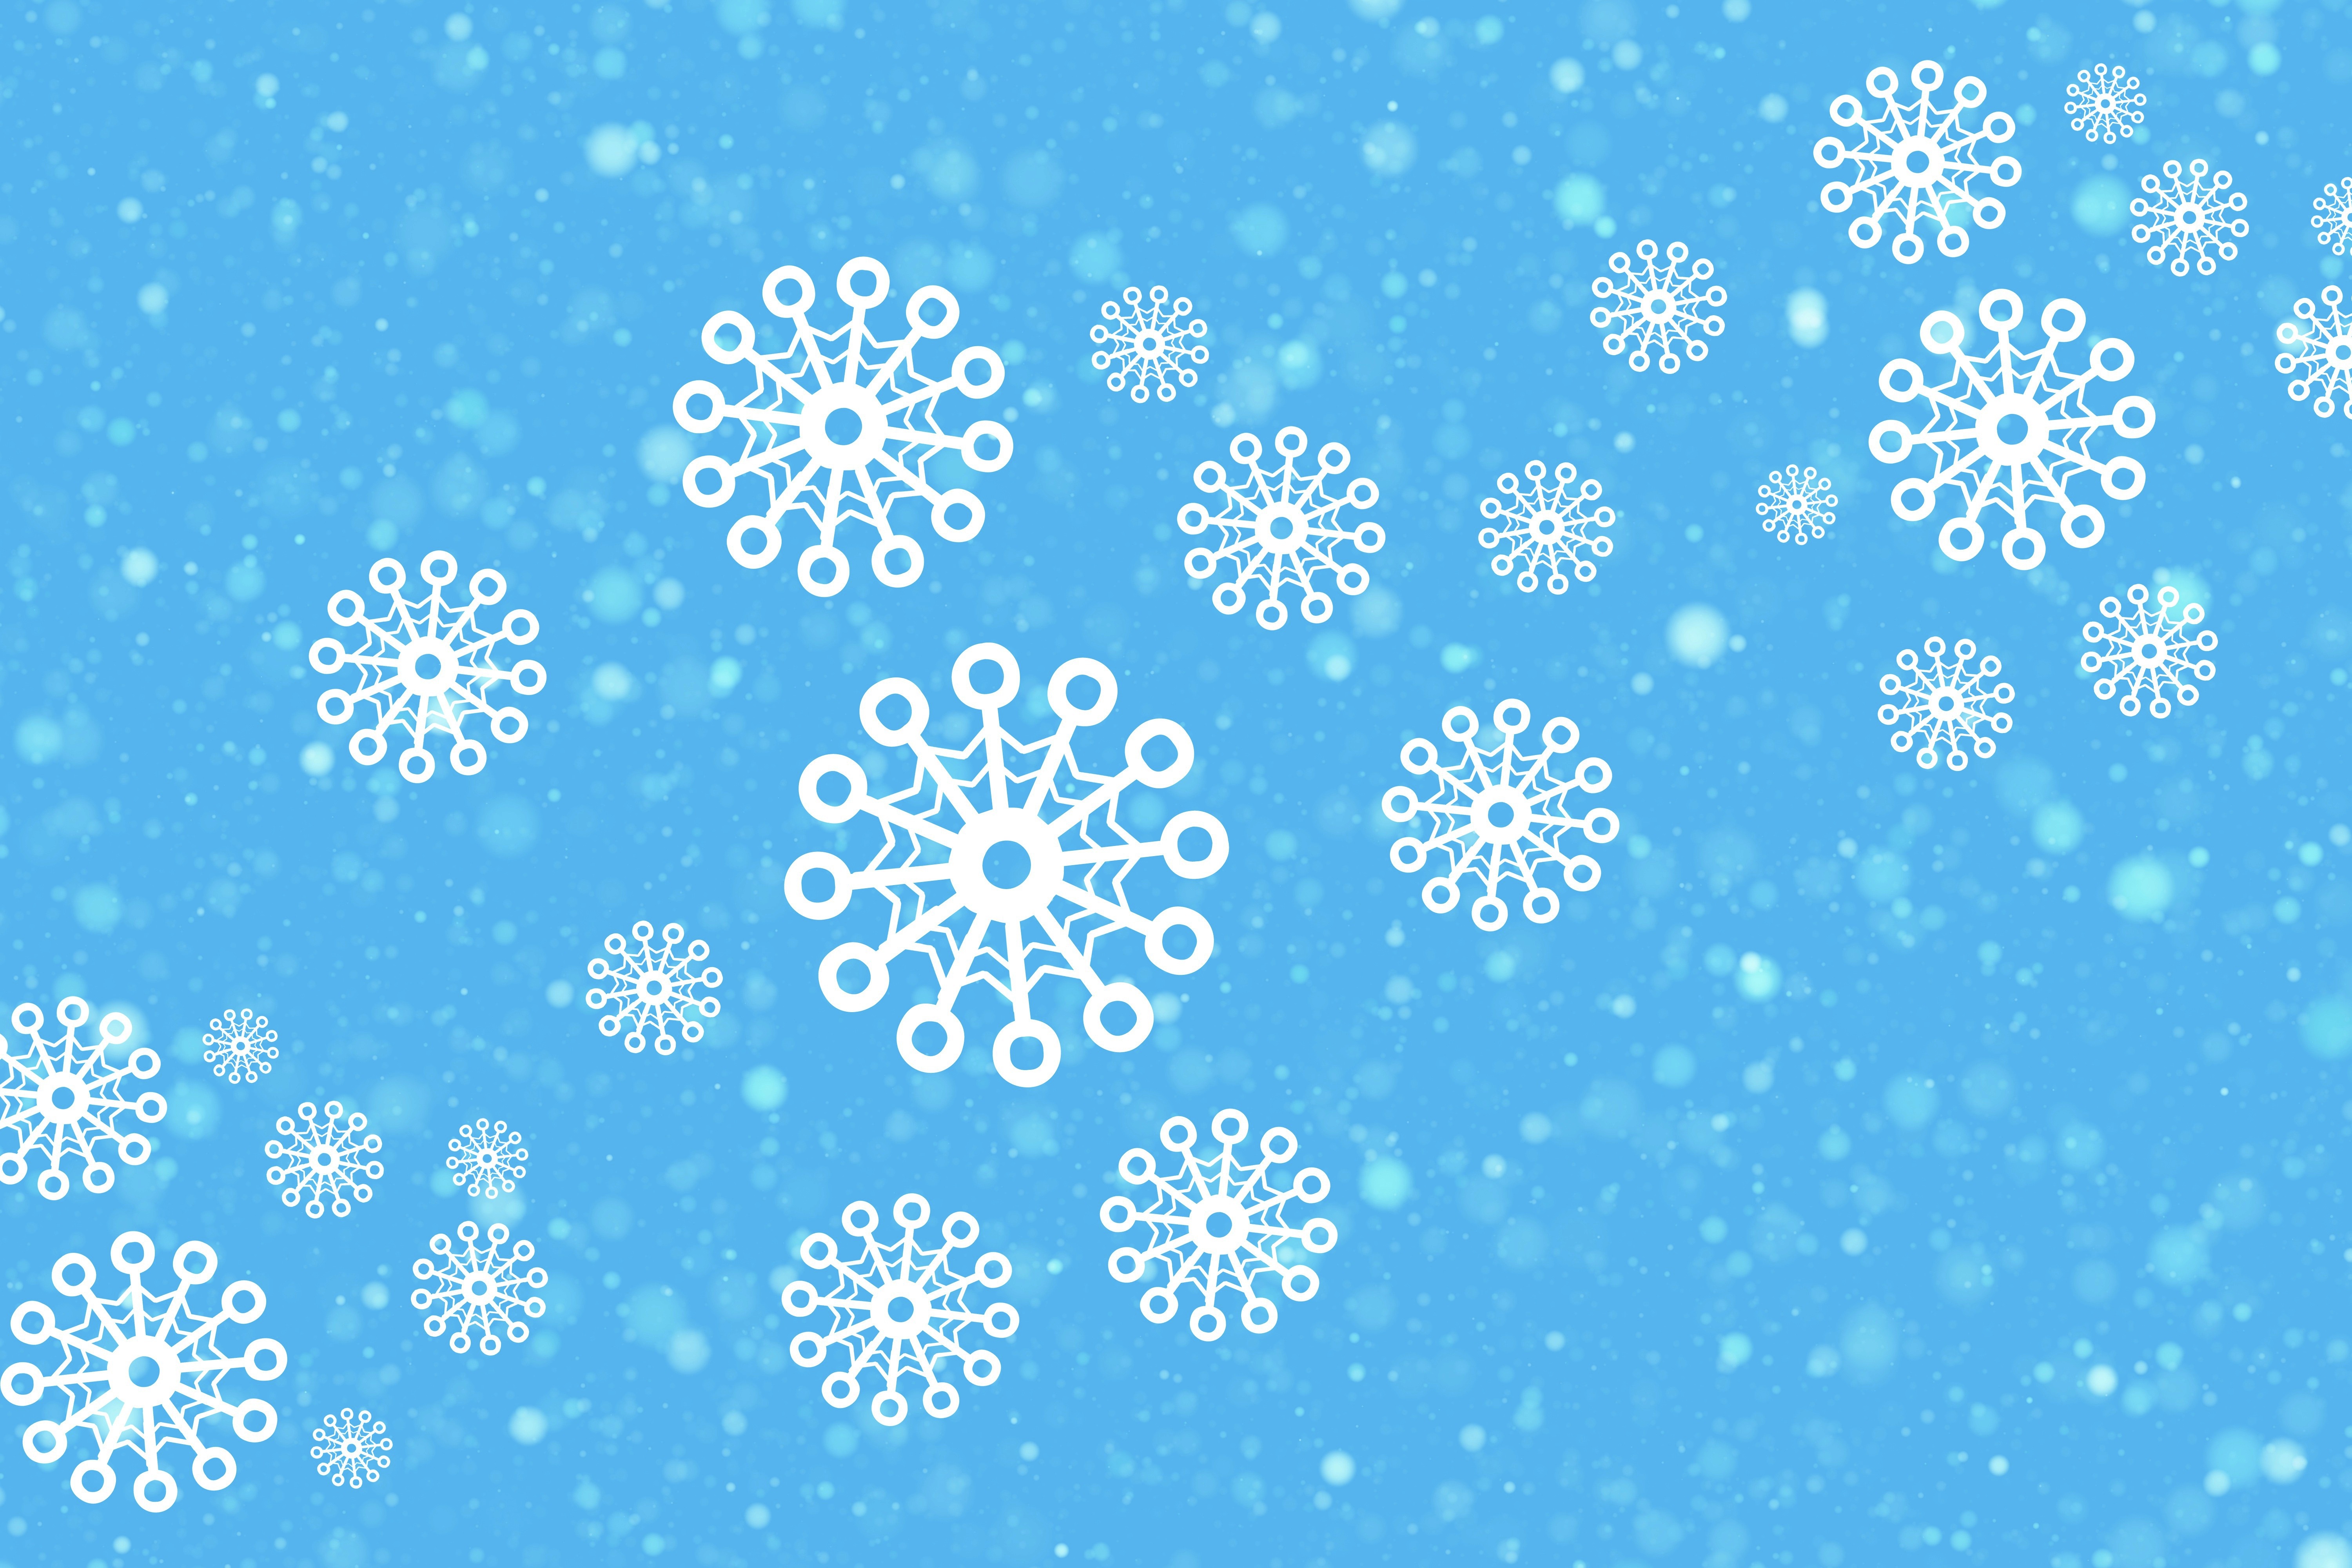 Картинки фон снежинки. Фон снежинки. Зимний фон снежинки. Фон снежинки на голубом. Голубой фон со снежинками.